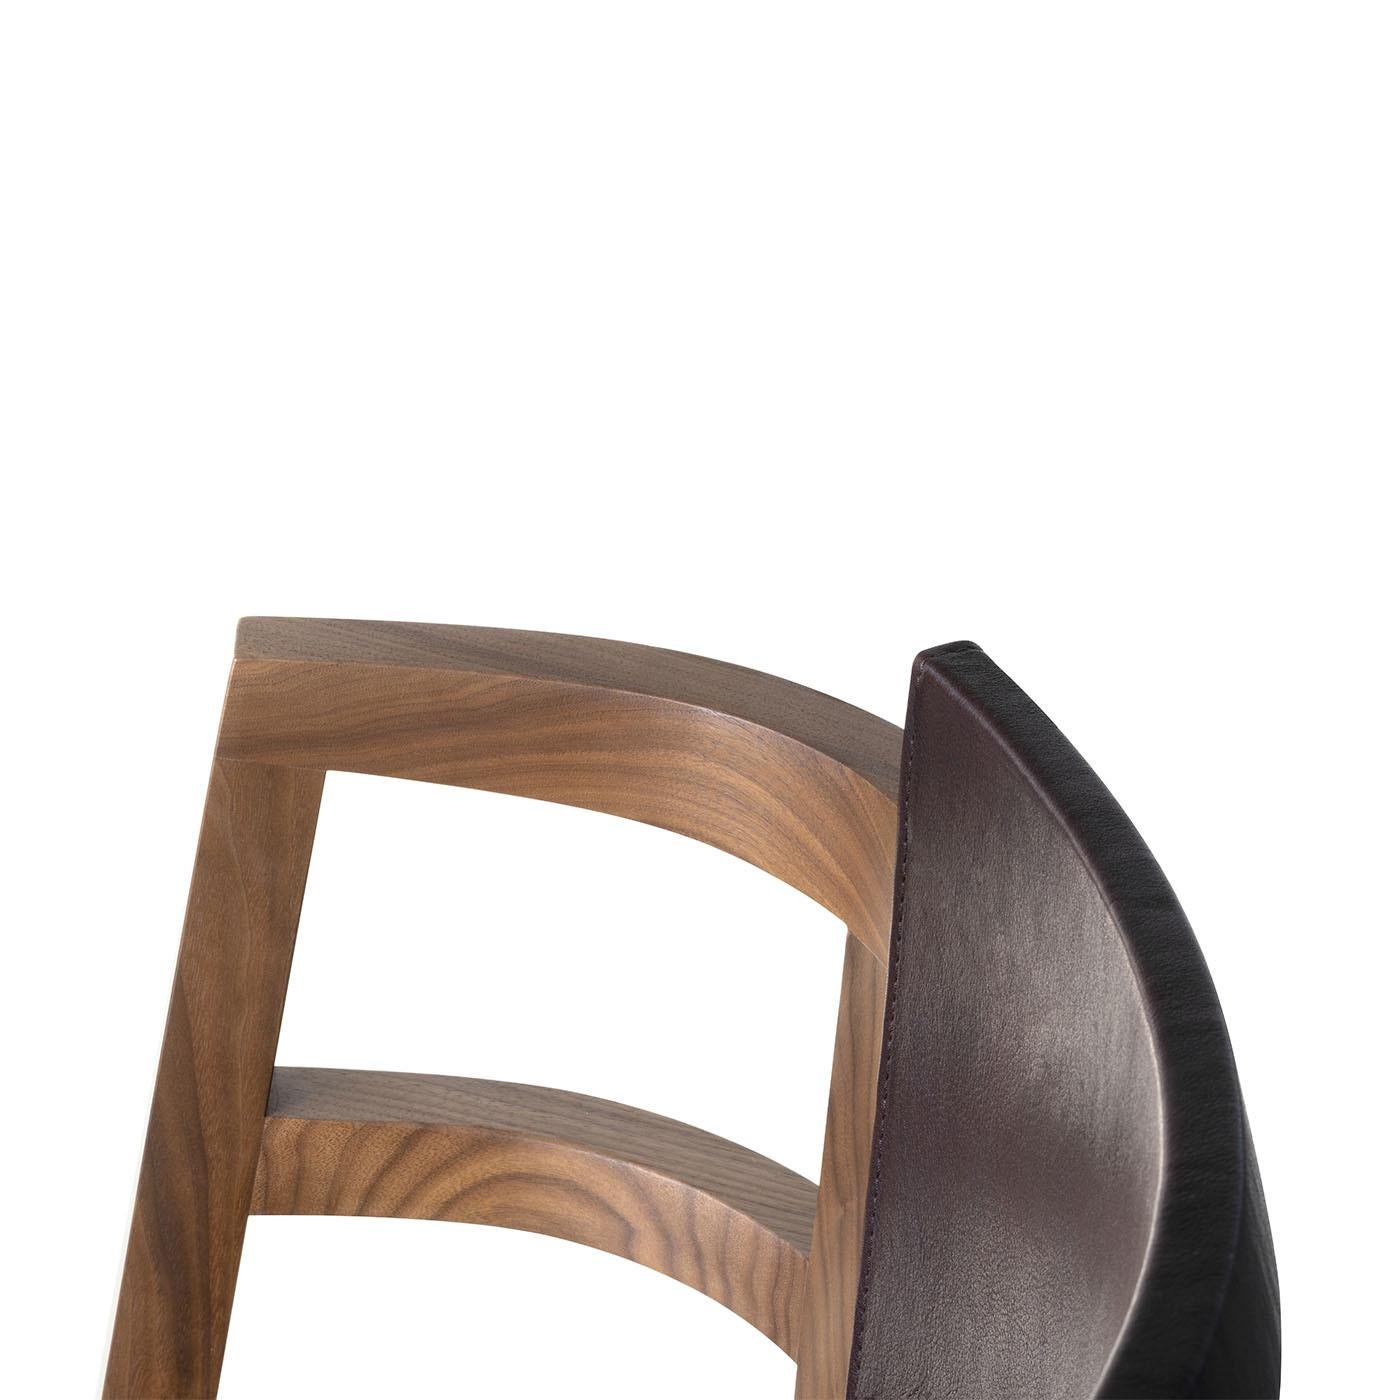 Le petit fauteuil Dama a été conçu par Enrico Tonucci et se caractérise par des lignes minimalistes inspirées de l'image d'une dame de compagnie vêtue d'une crinoline. Il est fabriqué en bois massif de noyer noir, avec le dossier et l'assise en